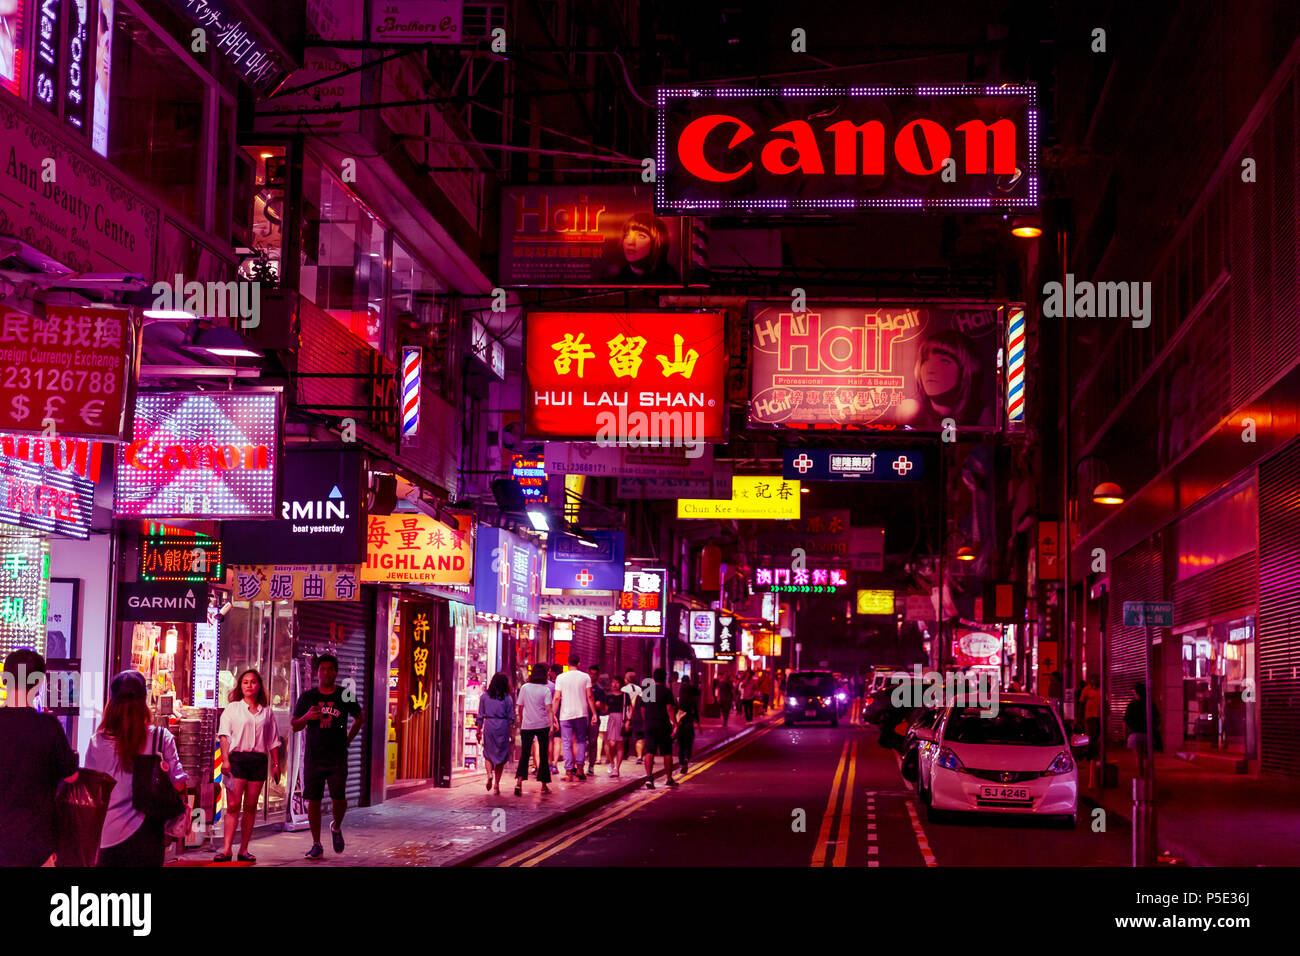 HONG KONG - JUNE 01, 2018: People shopping at night on pink neon streets in Hong Kong Stock Photo